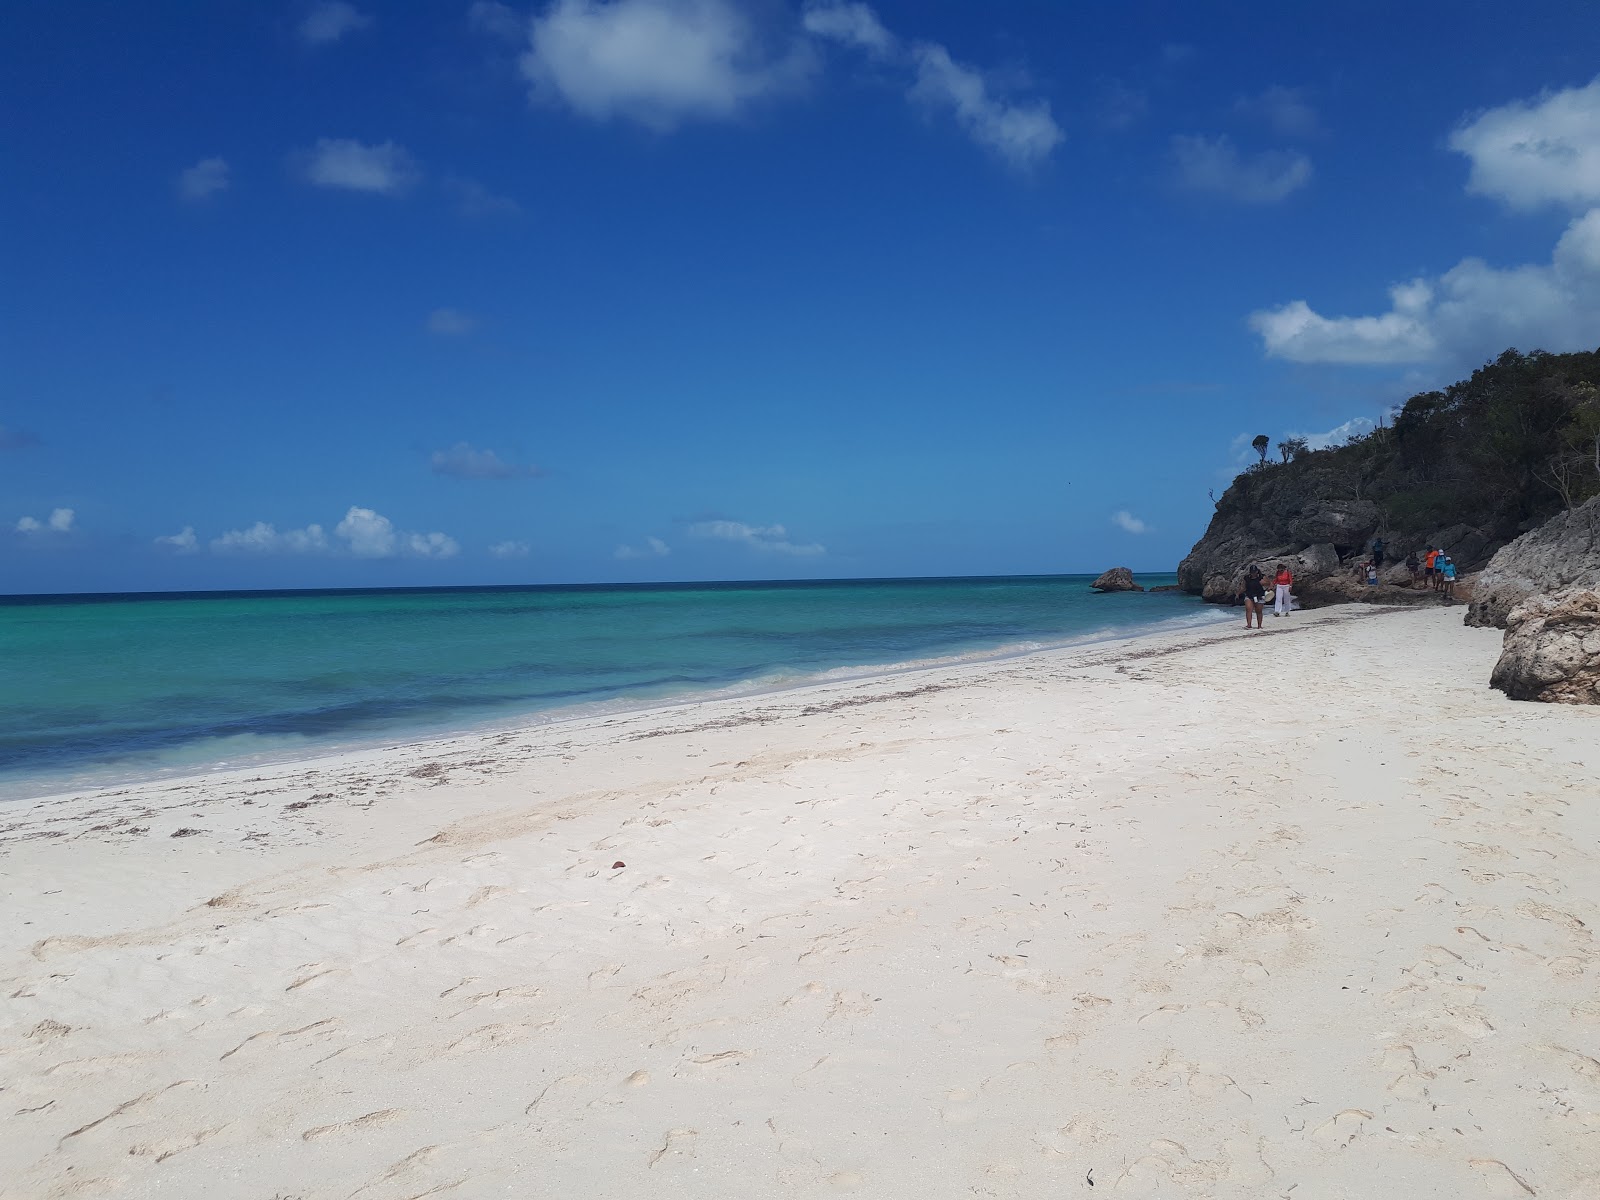 Blanca beach'in fotoğrafı geniş plaj ile birlikte